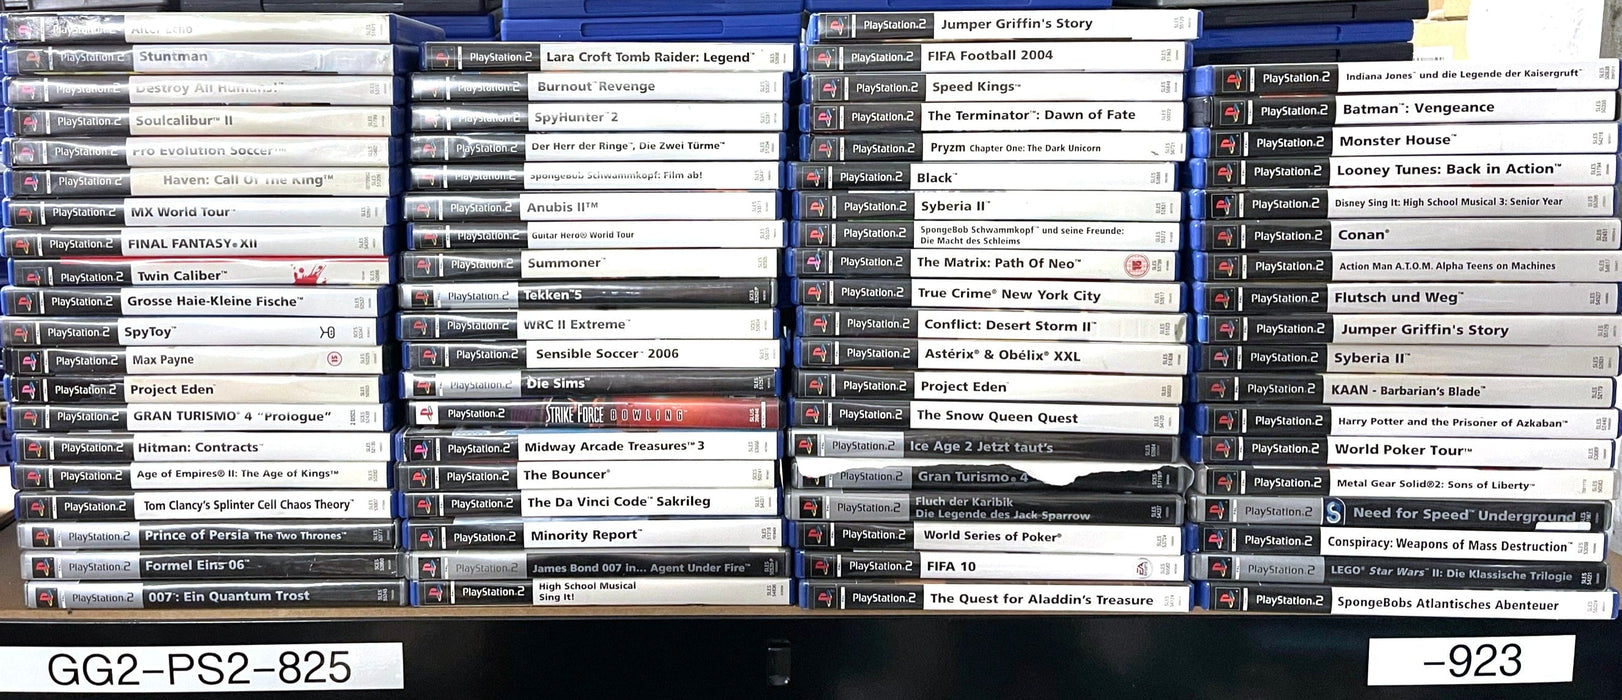 Glaciergames PlayStation 2 Game F1 Career Challenge PlayStation 2 (Nr.271)